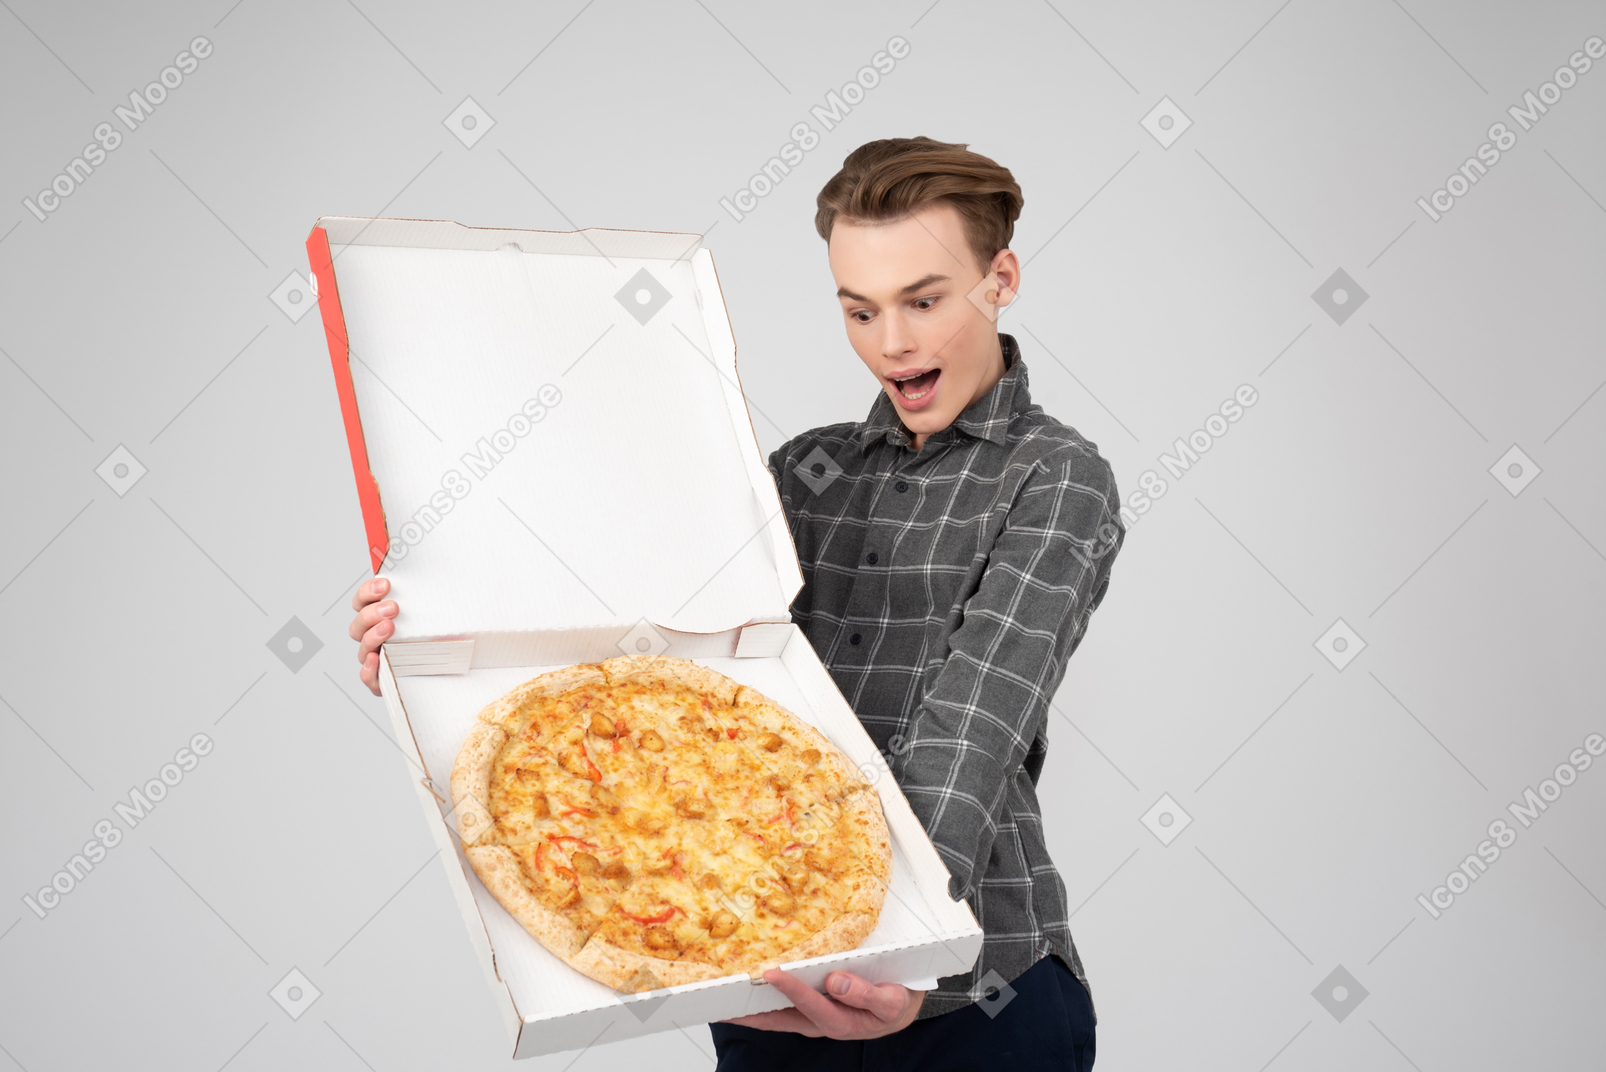 Hâte de savourer cette pizza savoureuse